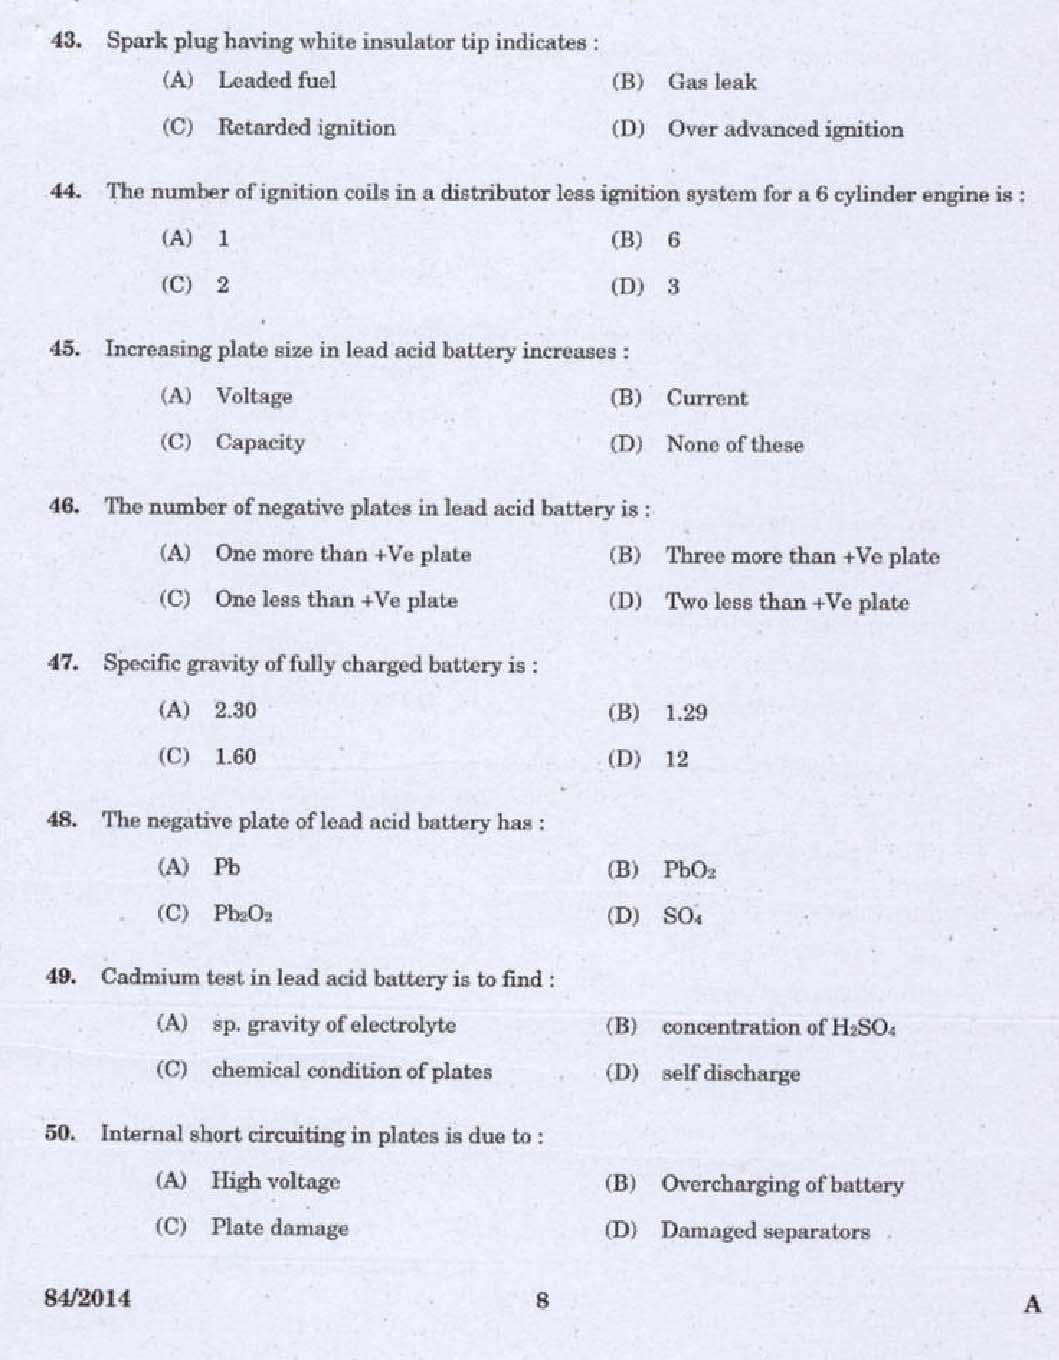 Kerala PSC Junior Instructor Exam 2014 Question Paper Code 842014 6